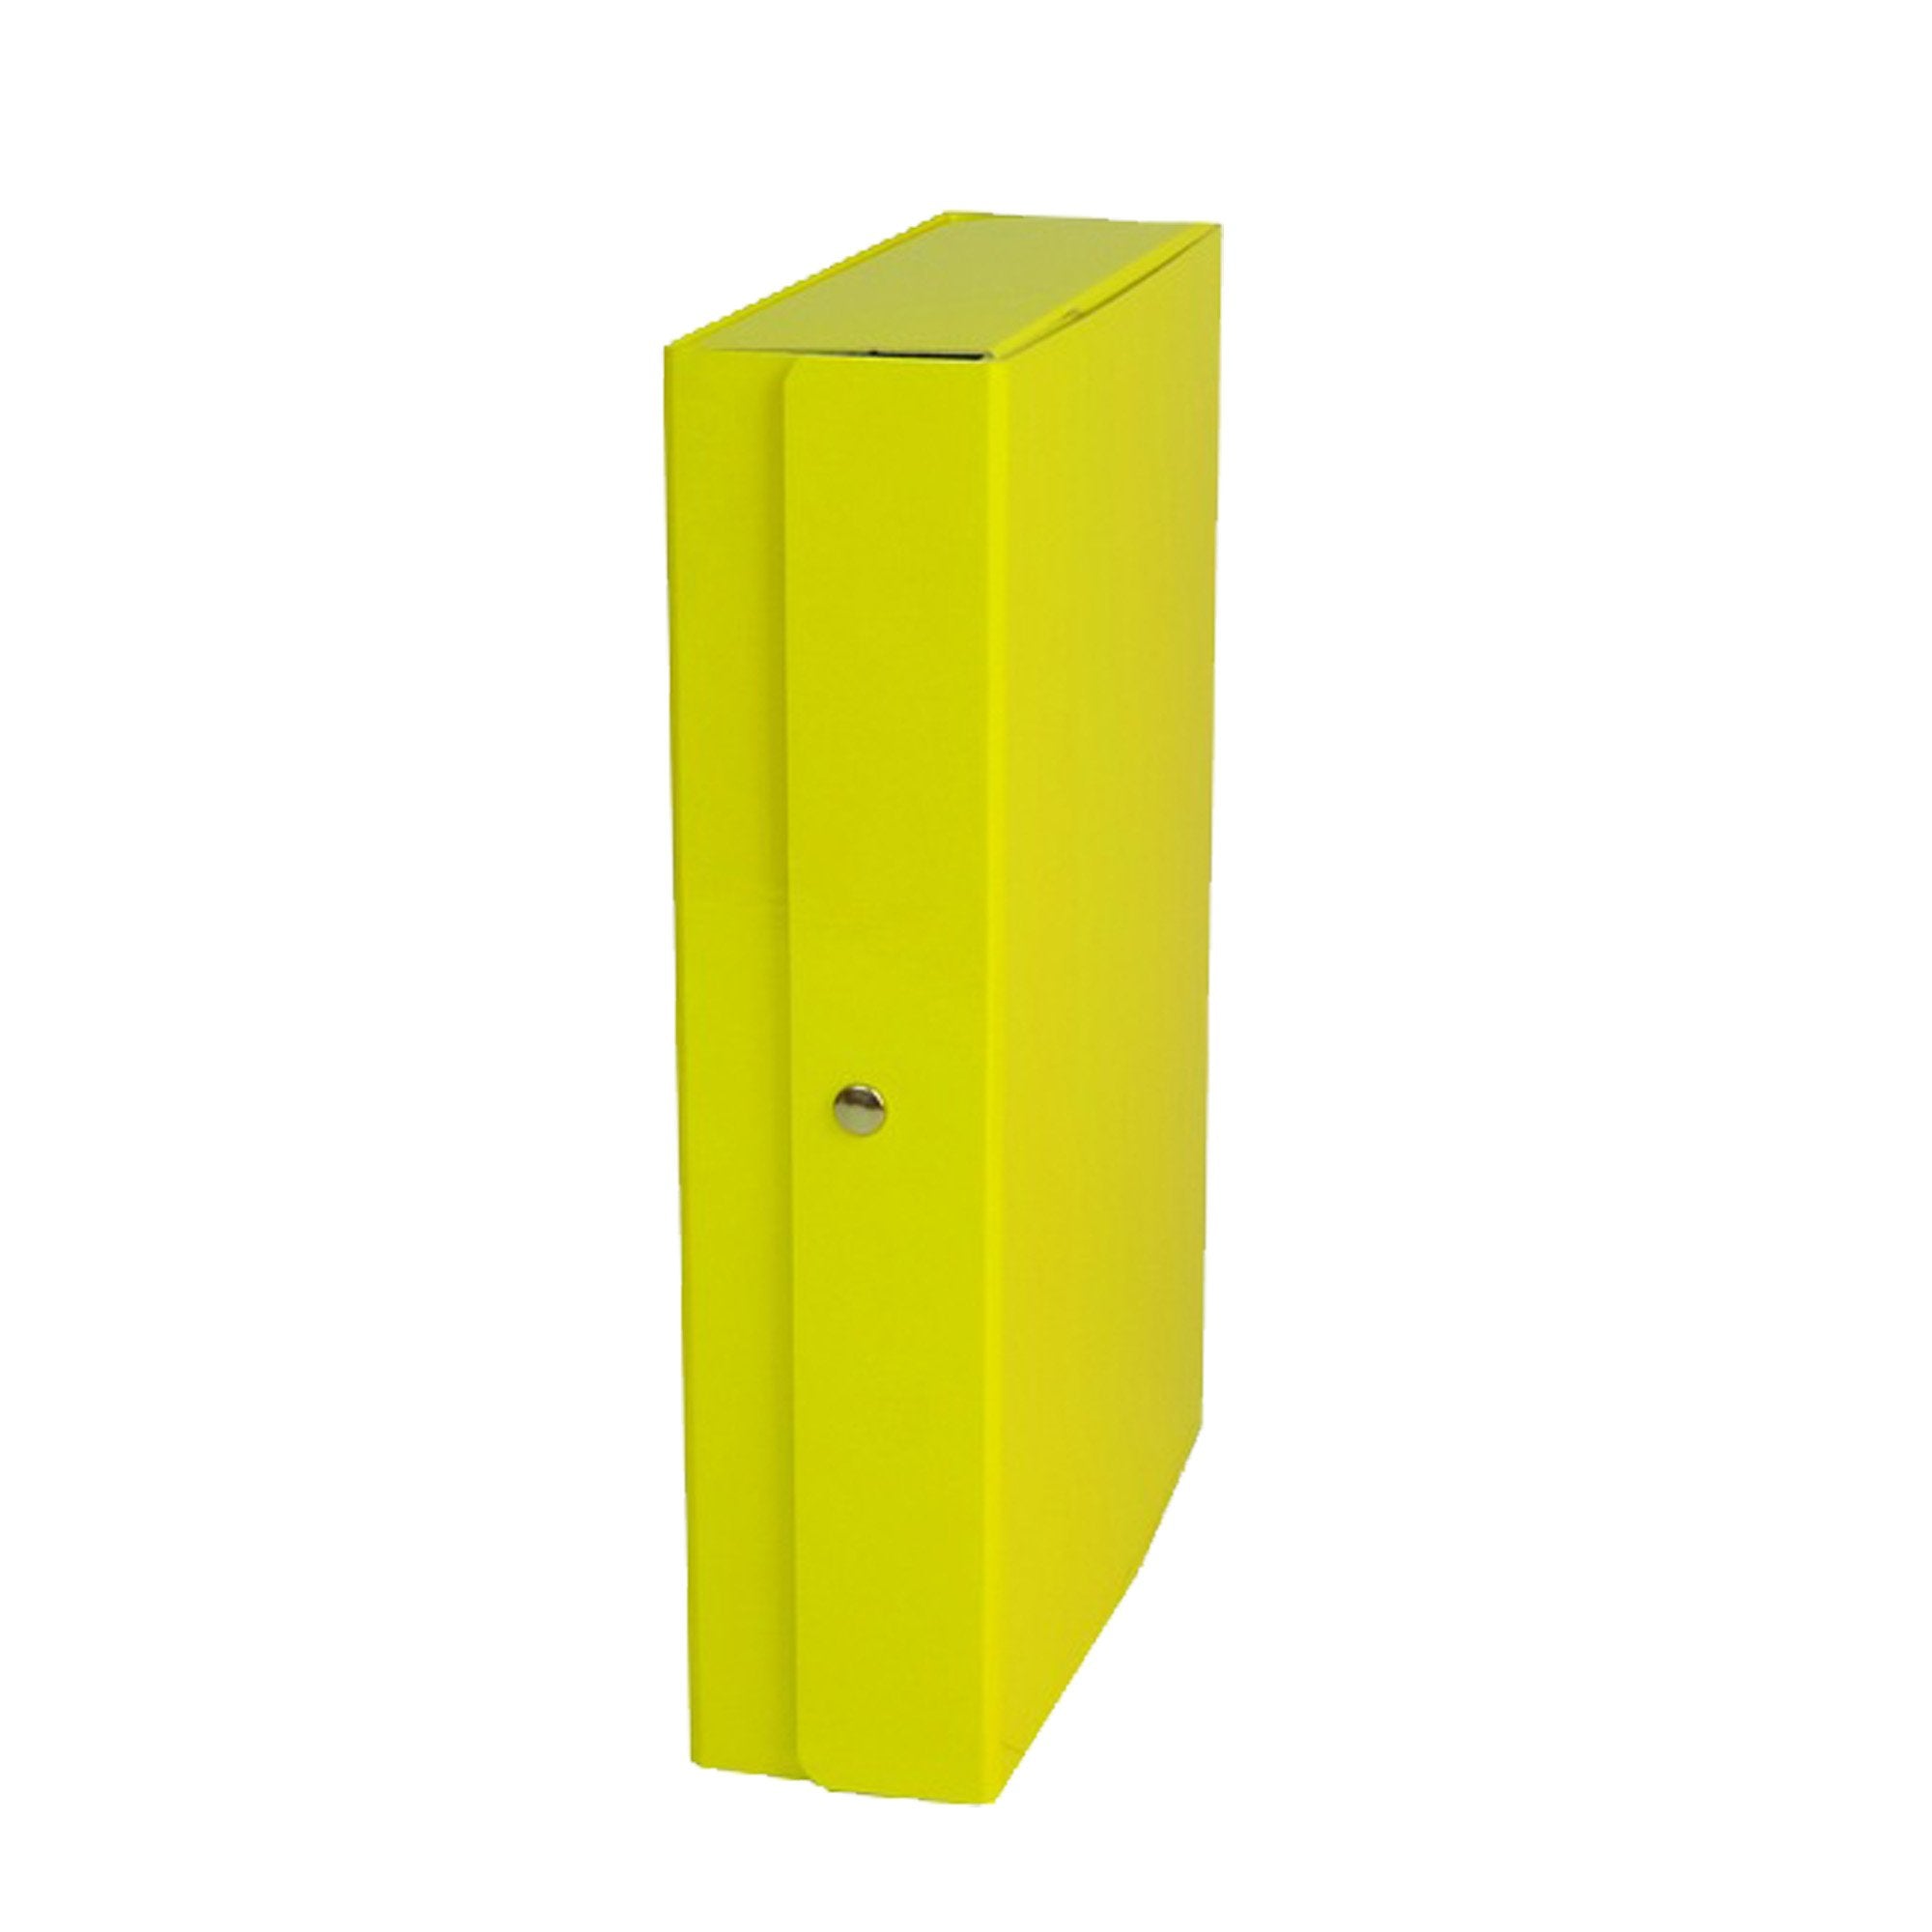 starline-scatola-progetto-6-giallo-glossy